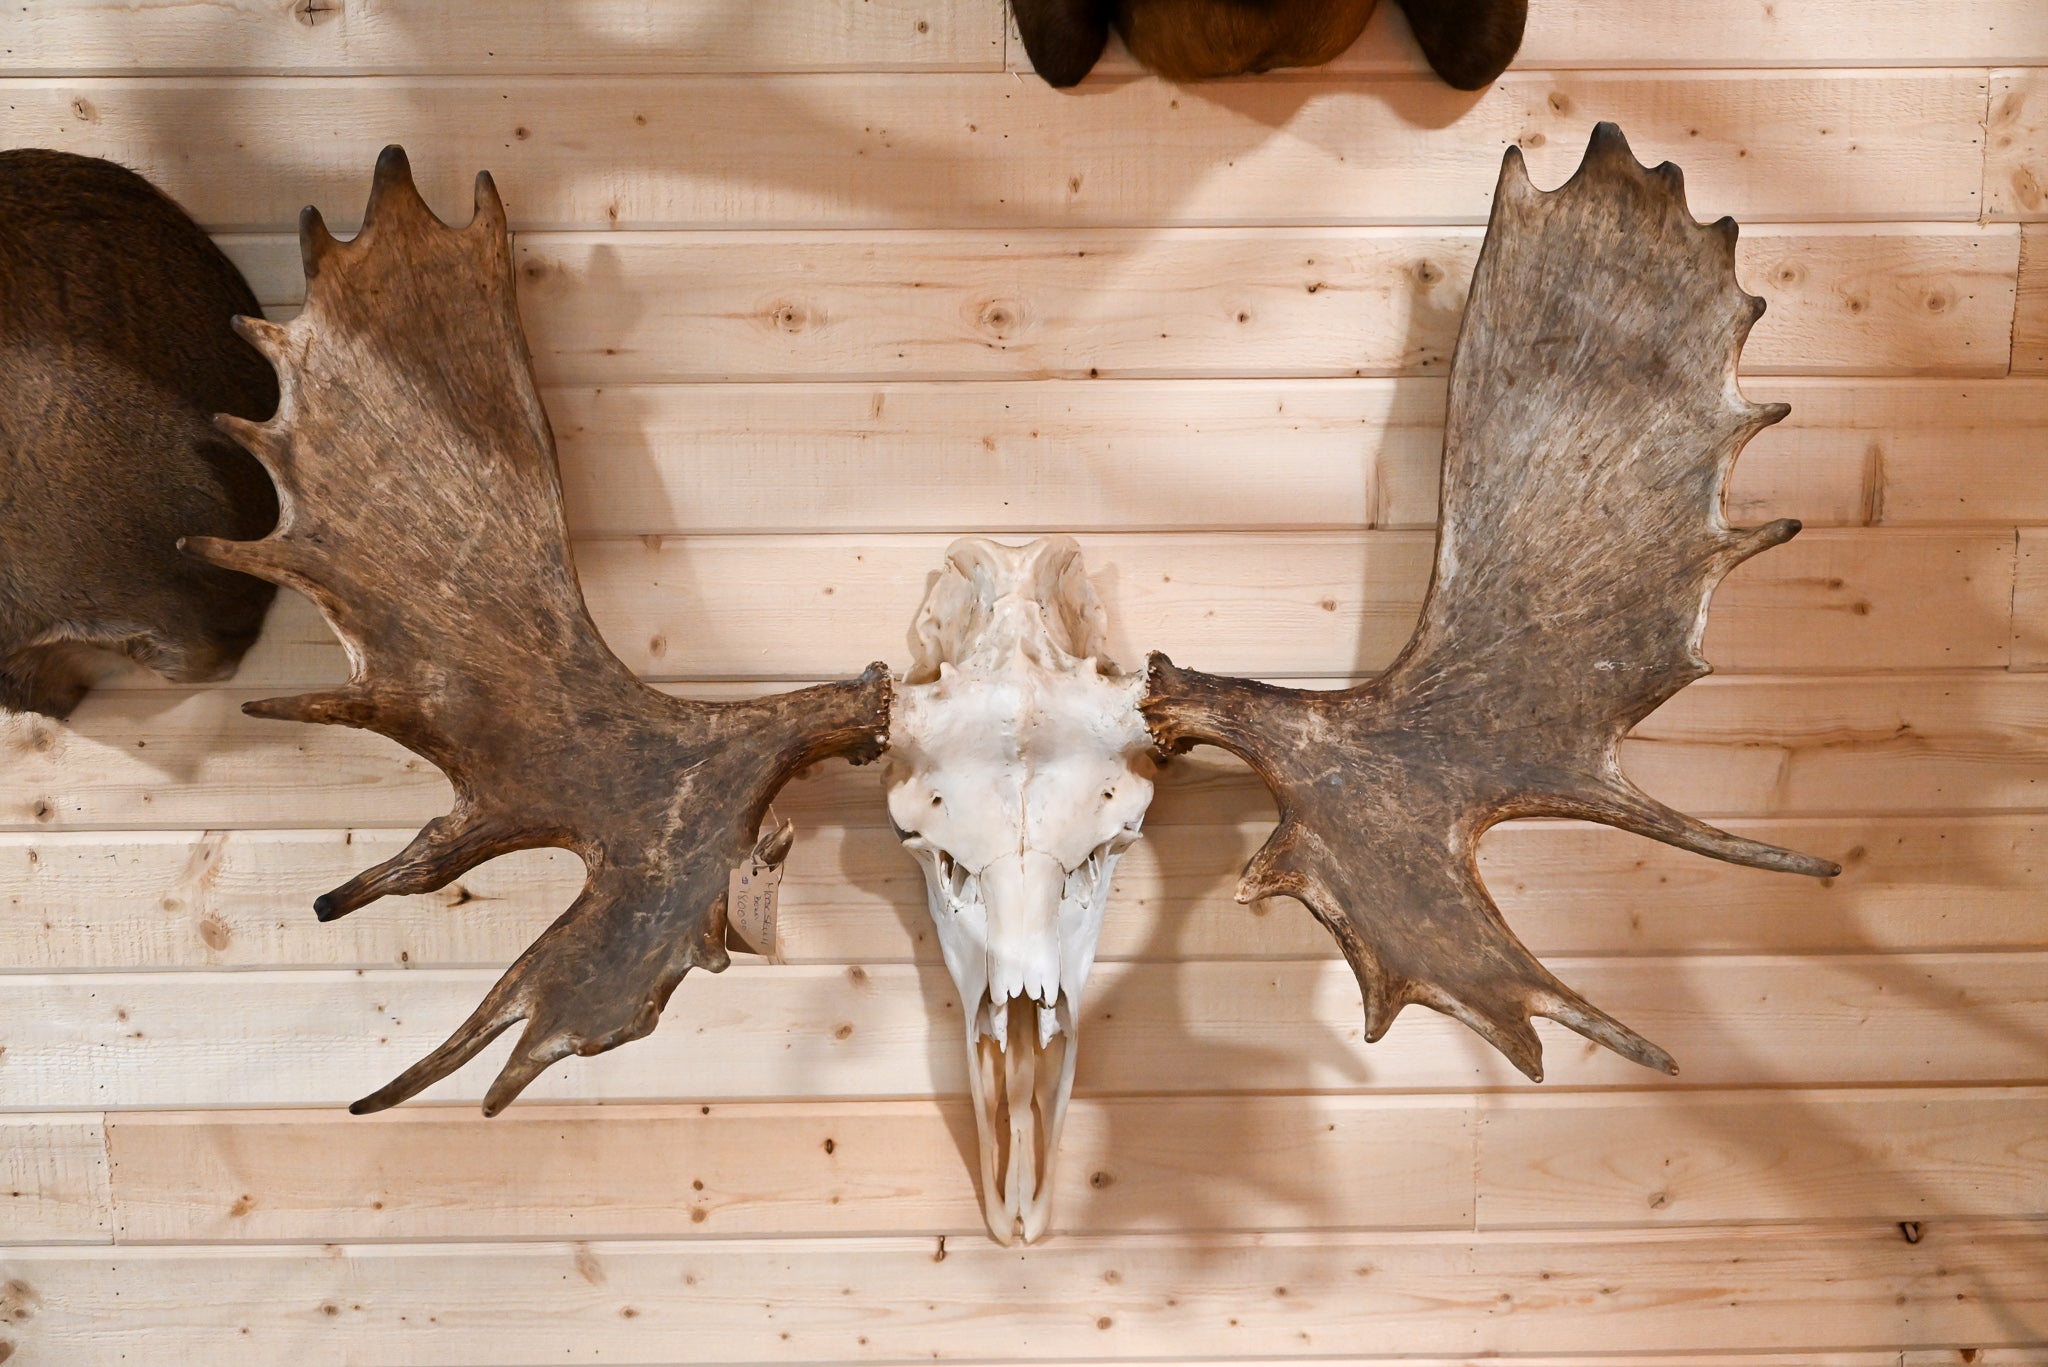 moose skull